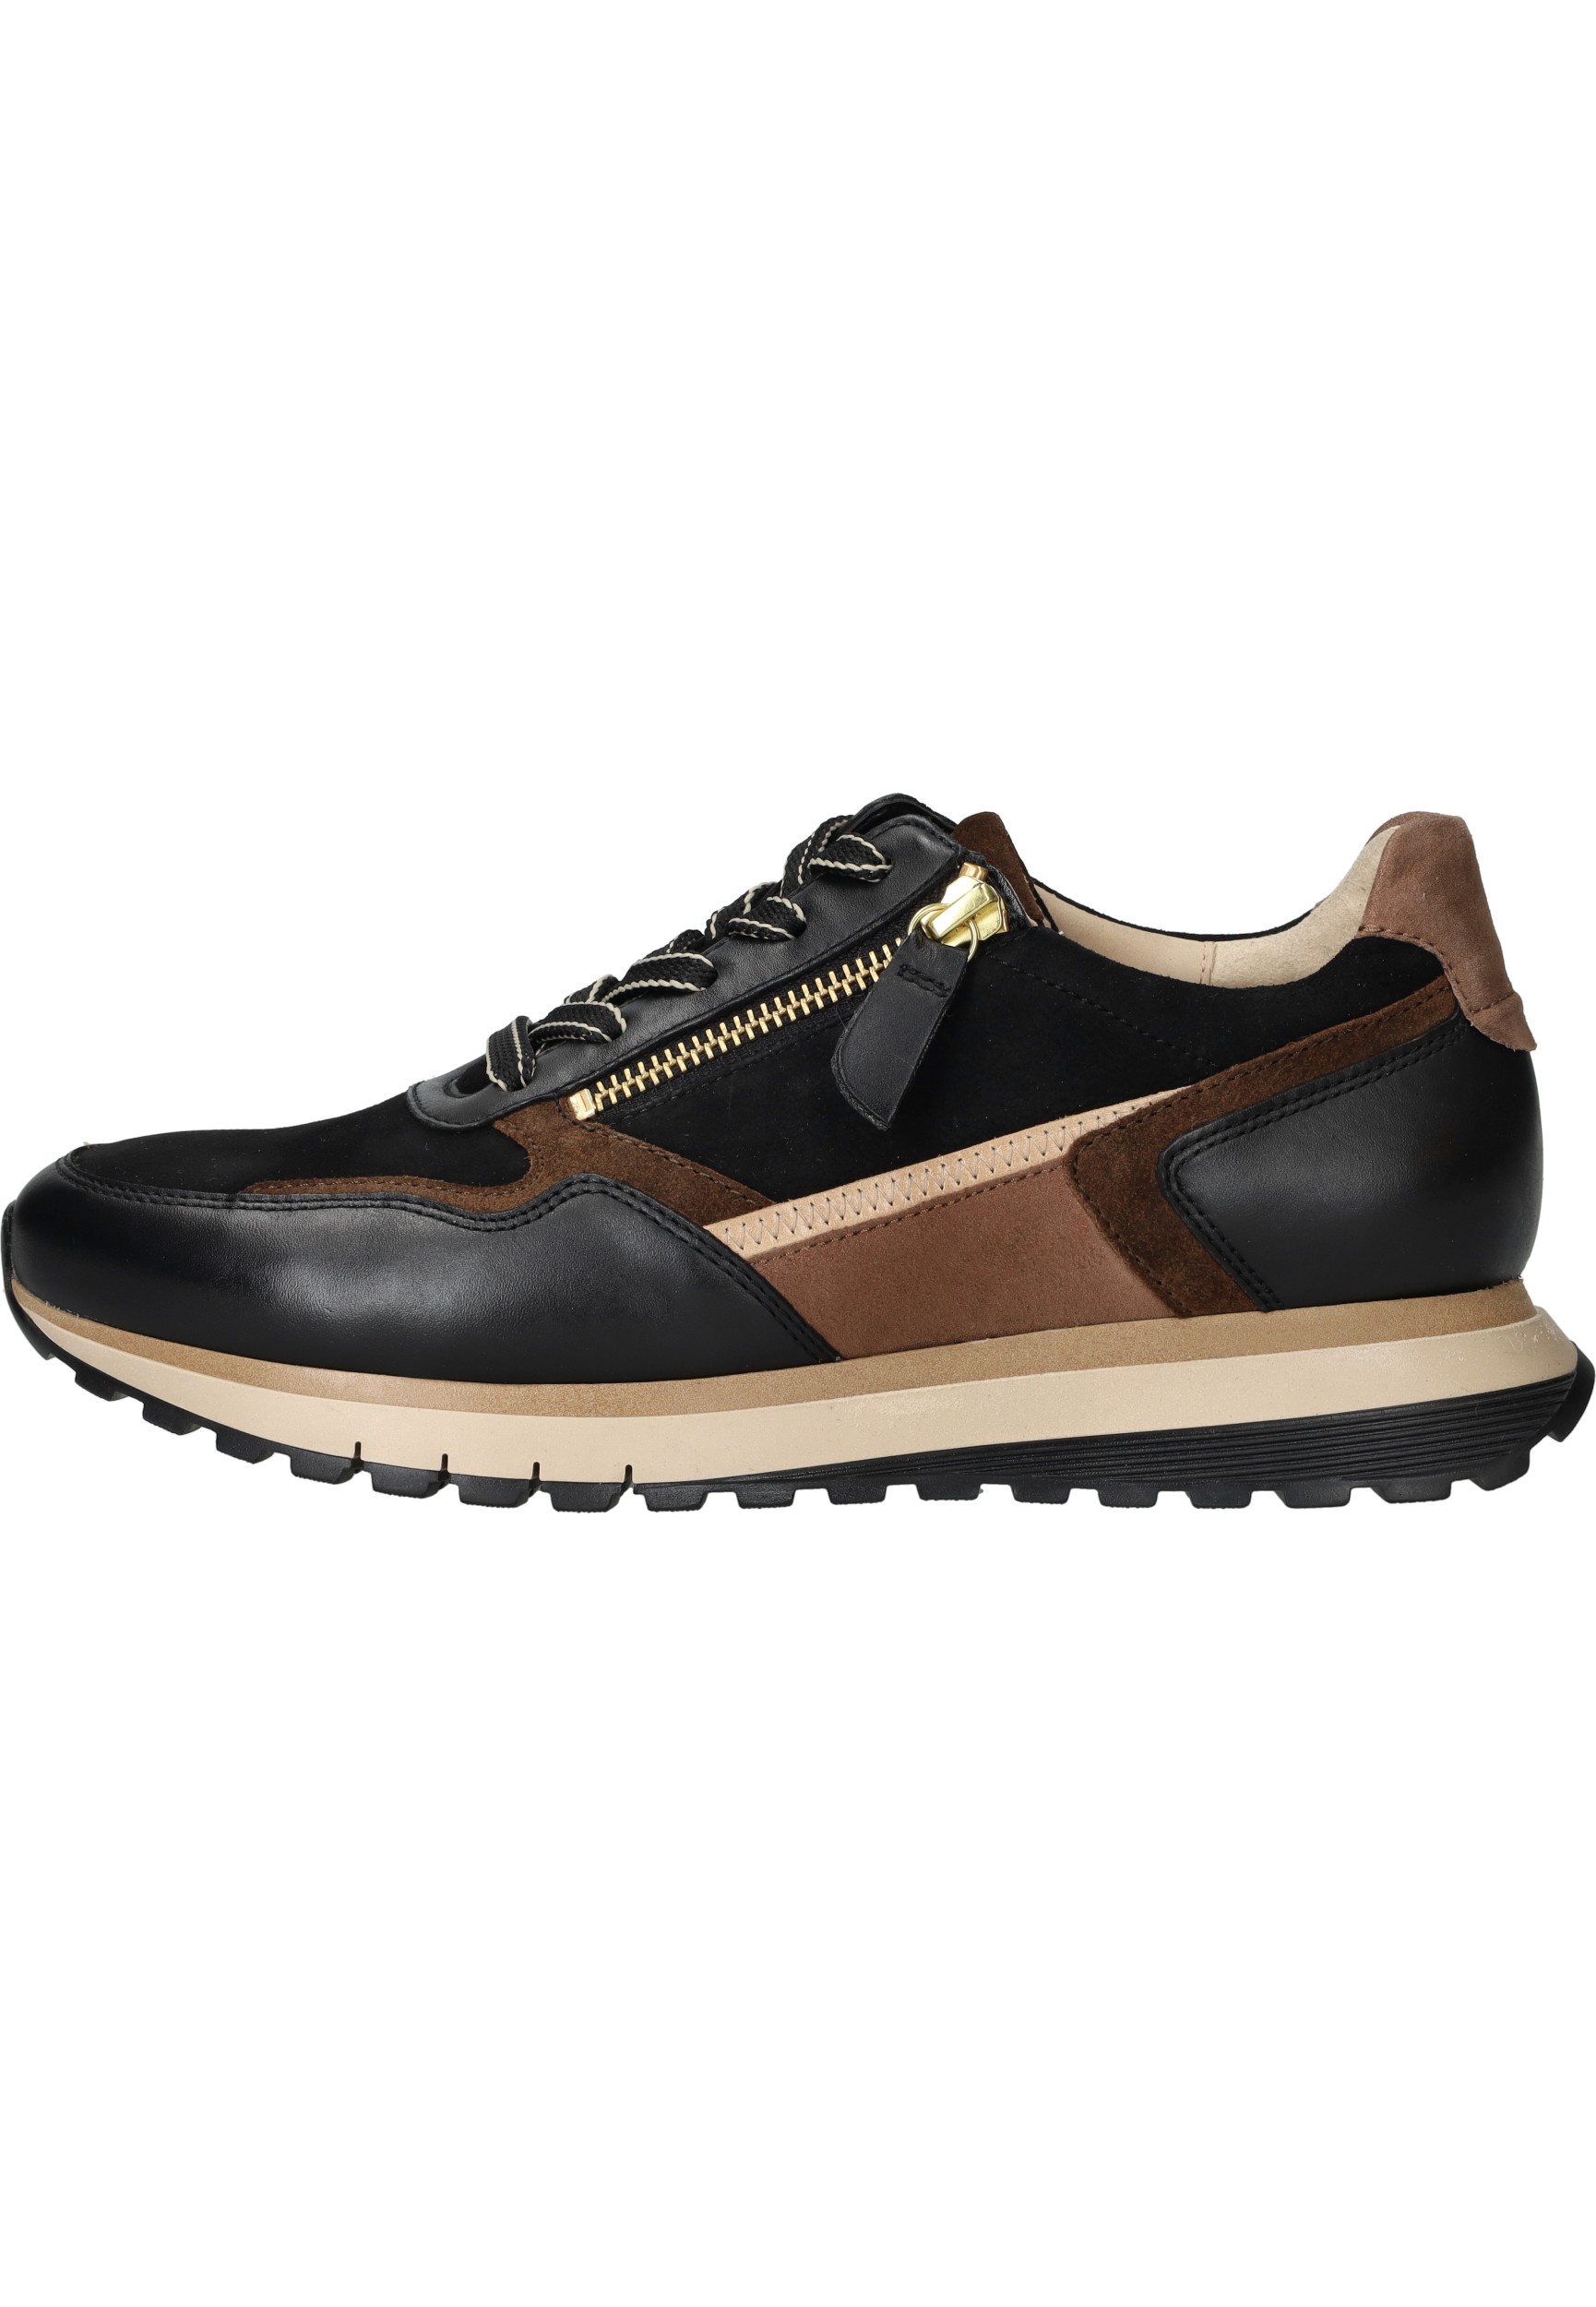 Gabor Dames Sneakers - zwart combi art - 56.378 67 maat 5.5/38.5